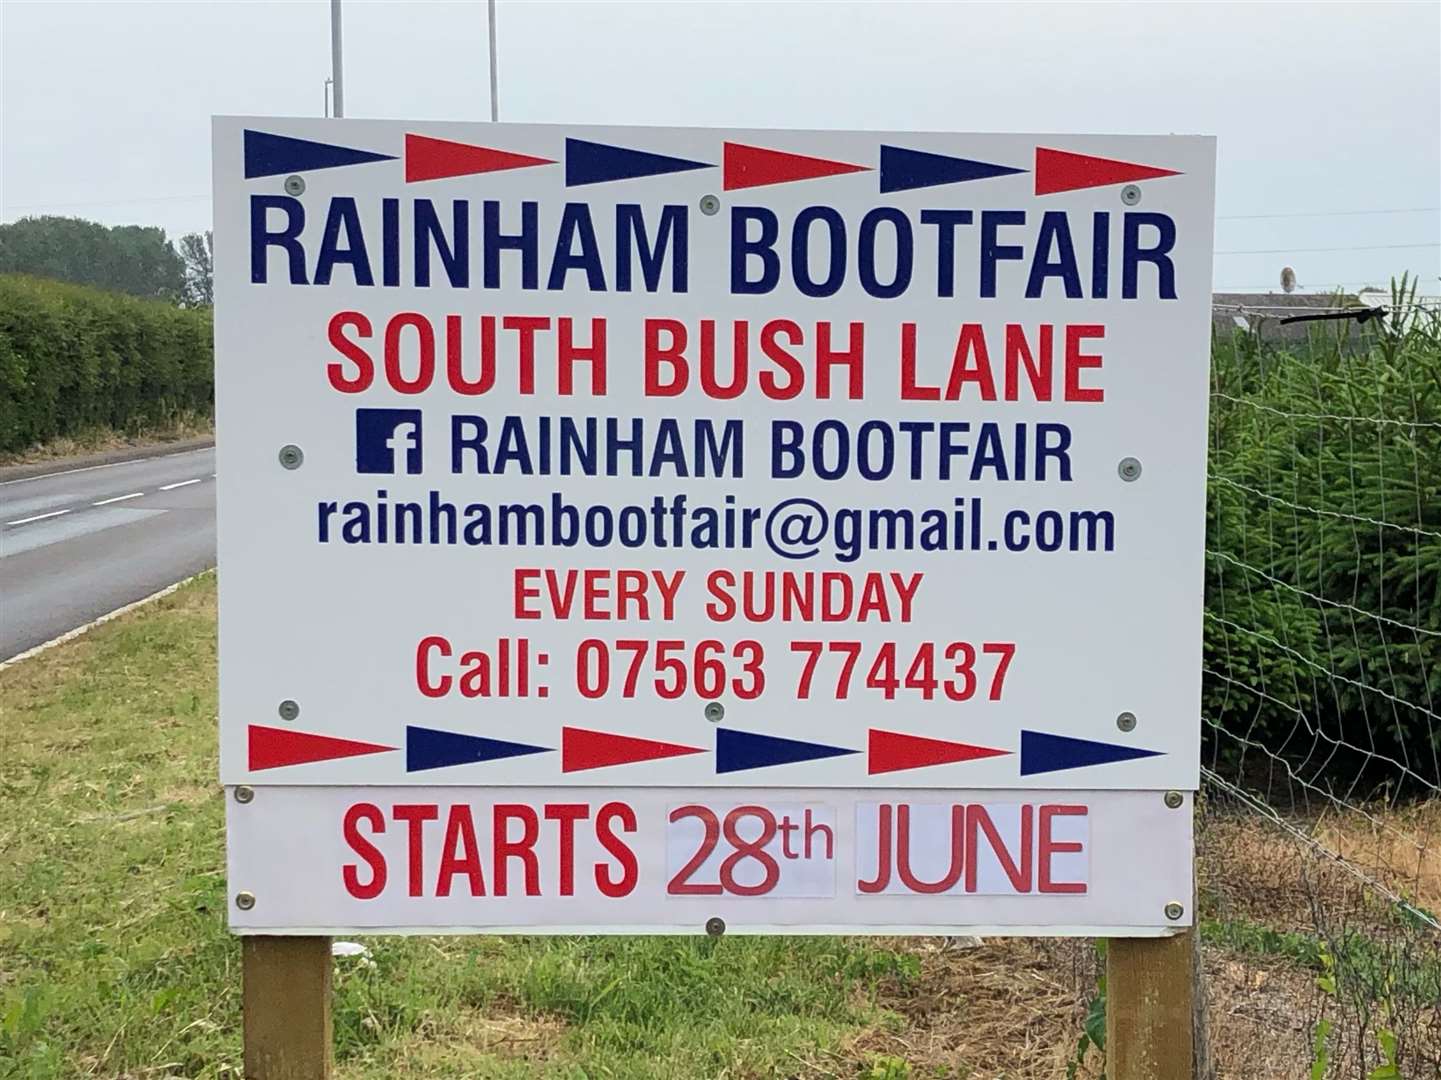 Rainham Bootfair is launching in South Bush Lane this Sunday